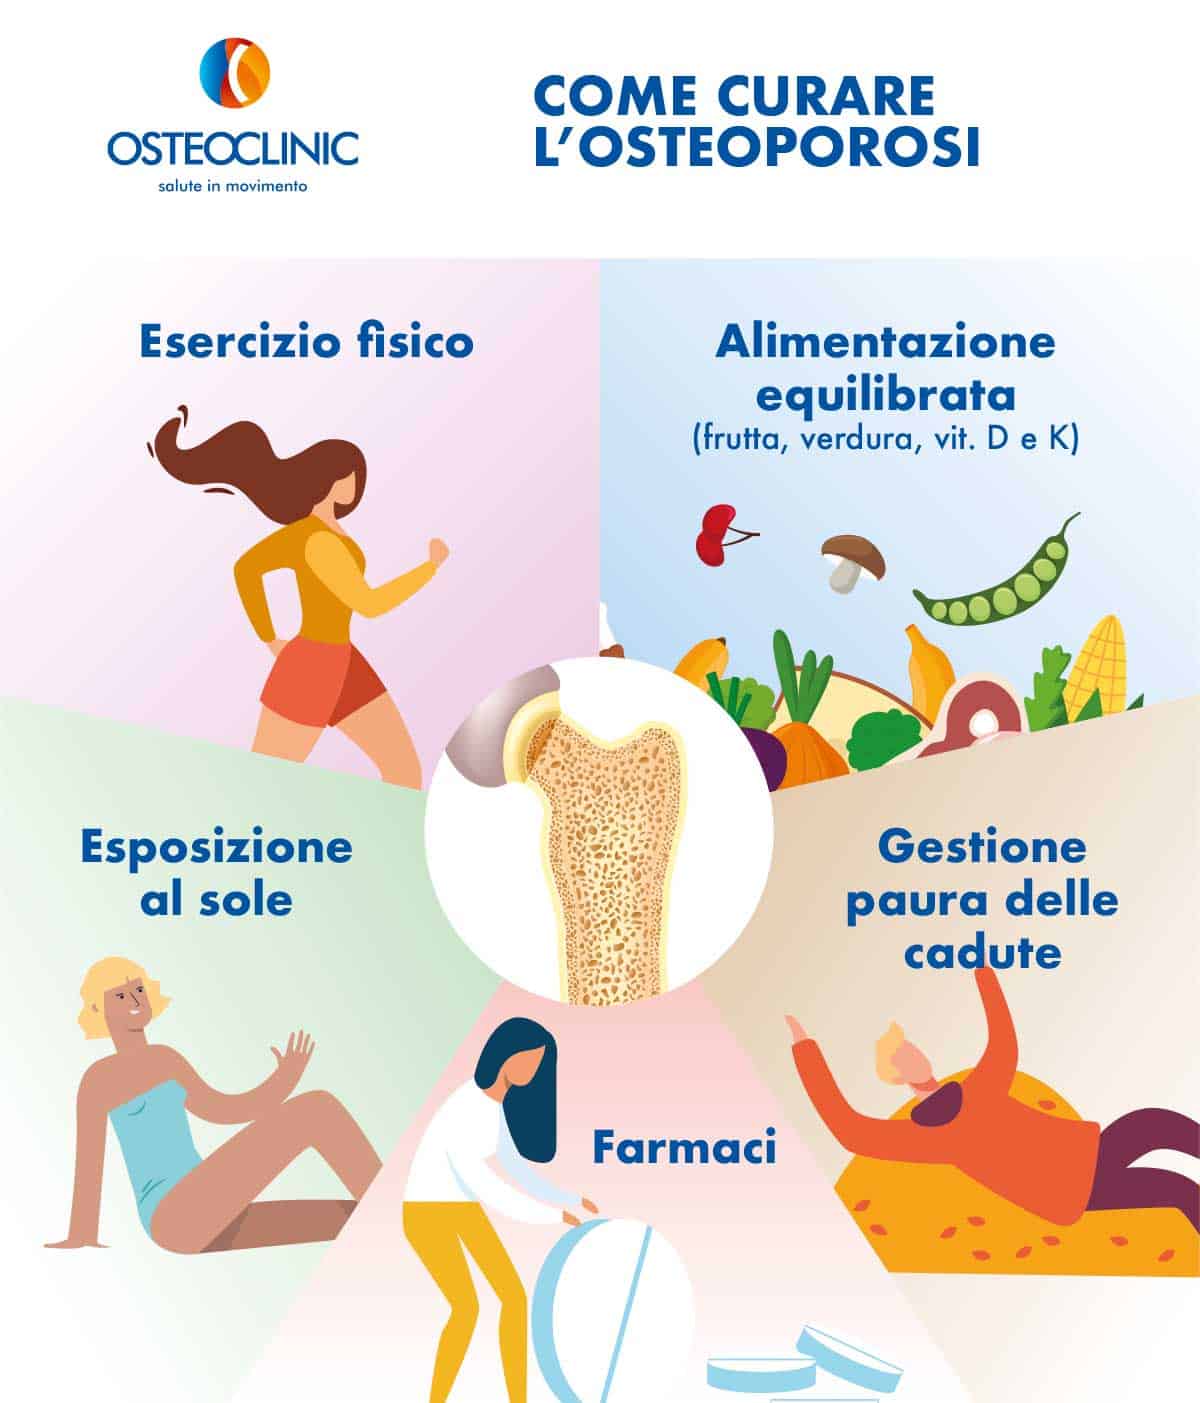 Osteoporosi cura e prevenzione